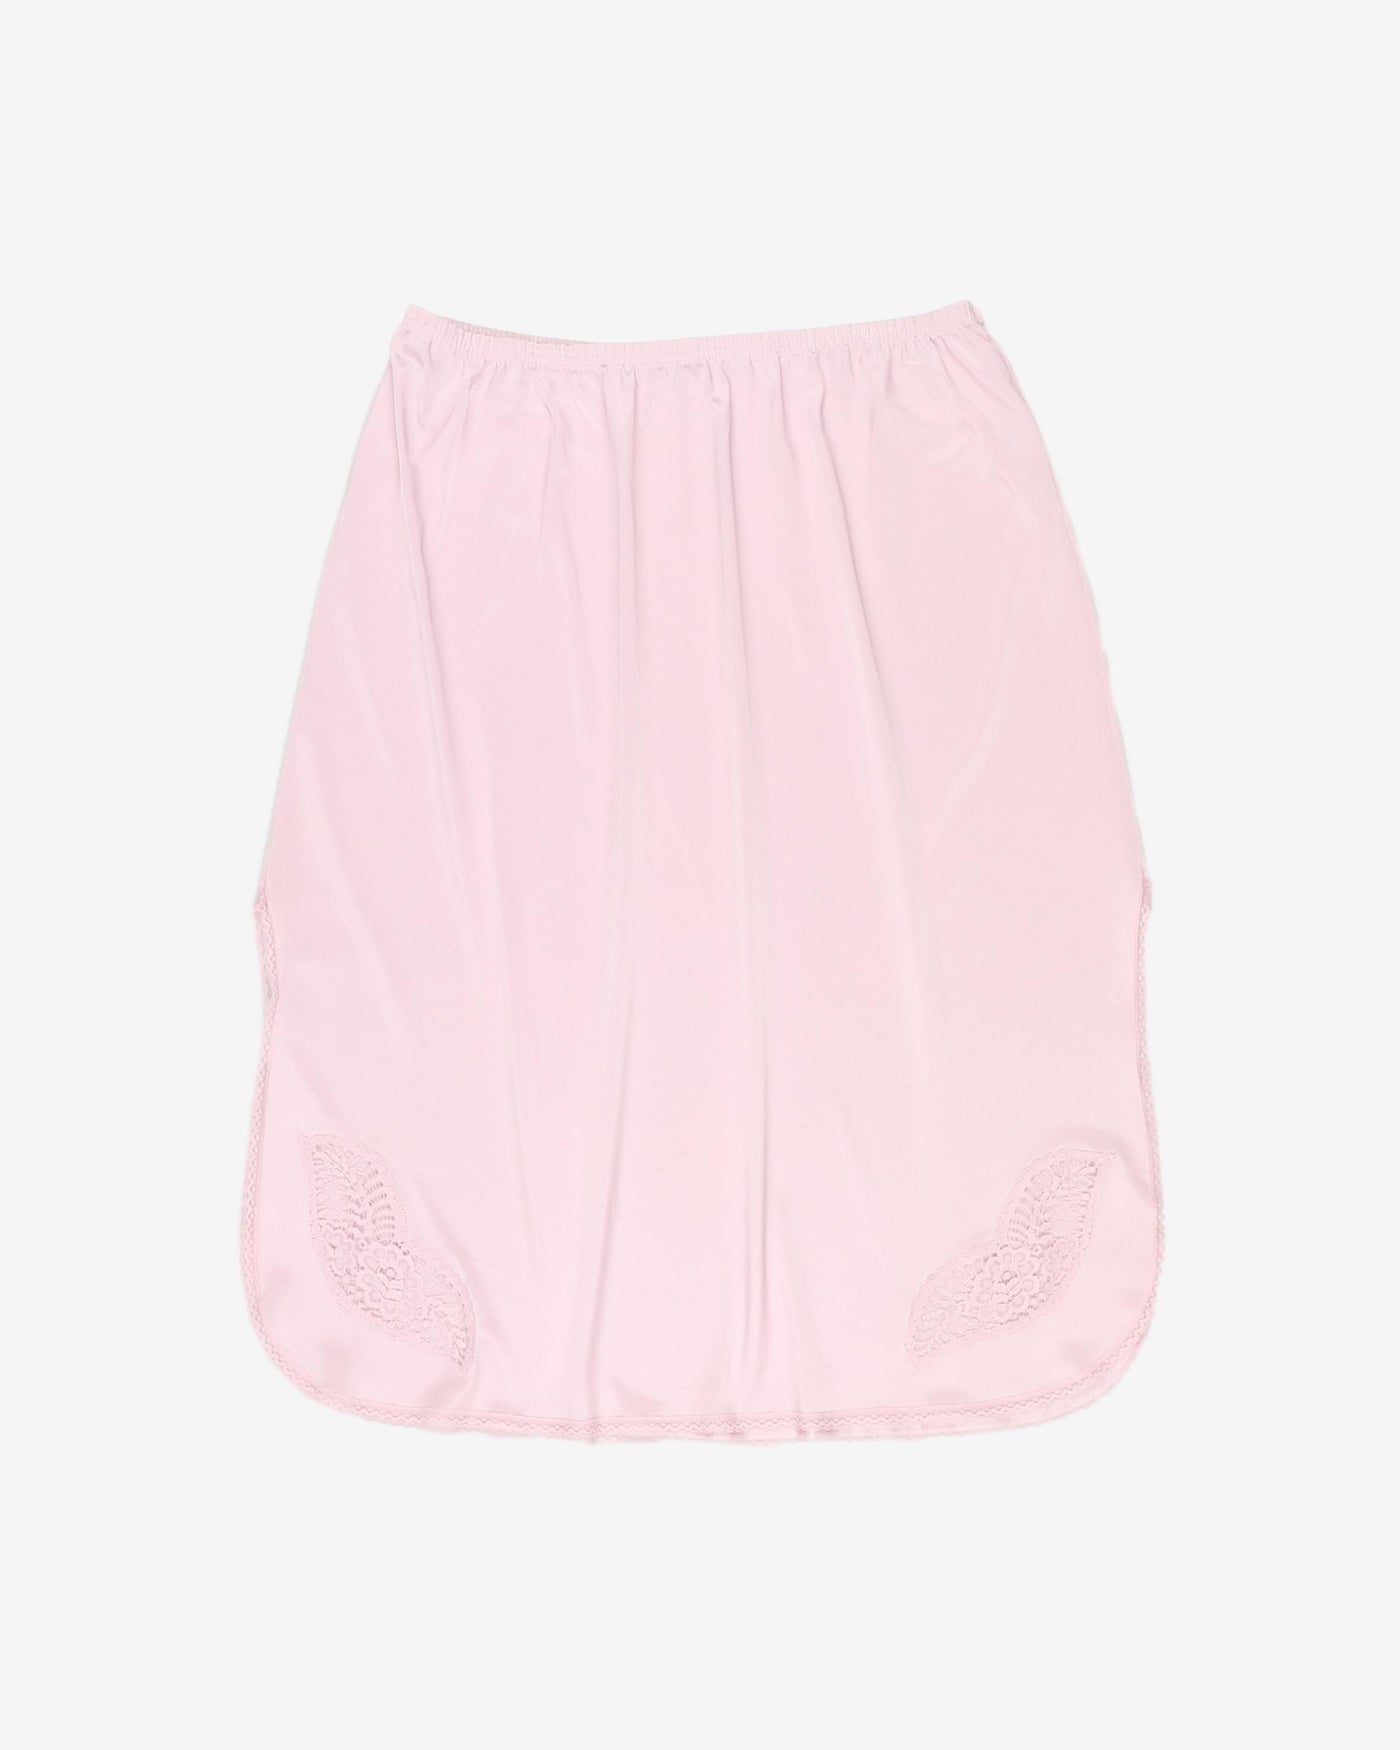 1980's pink lingerie skirt - S / M